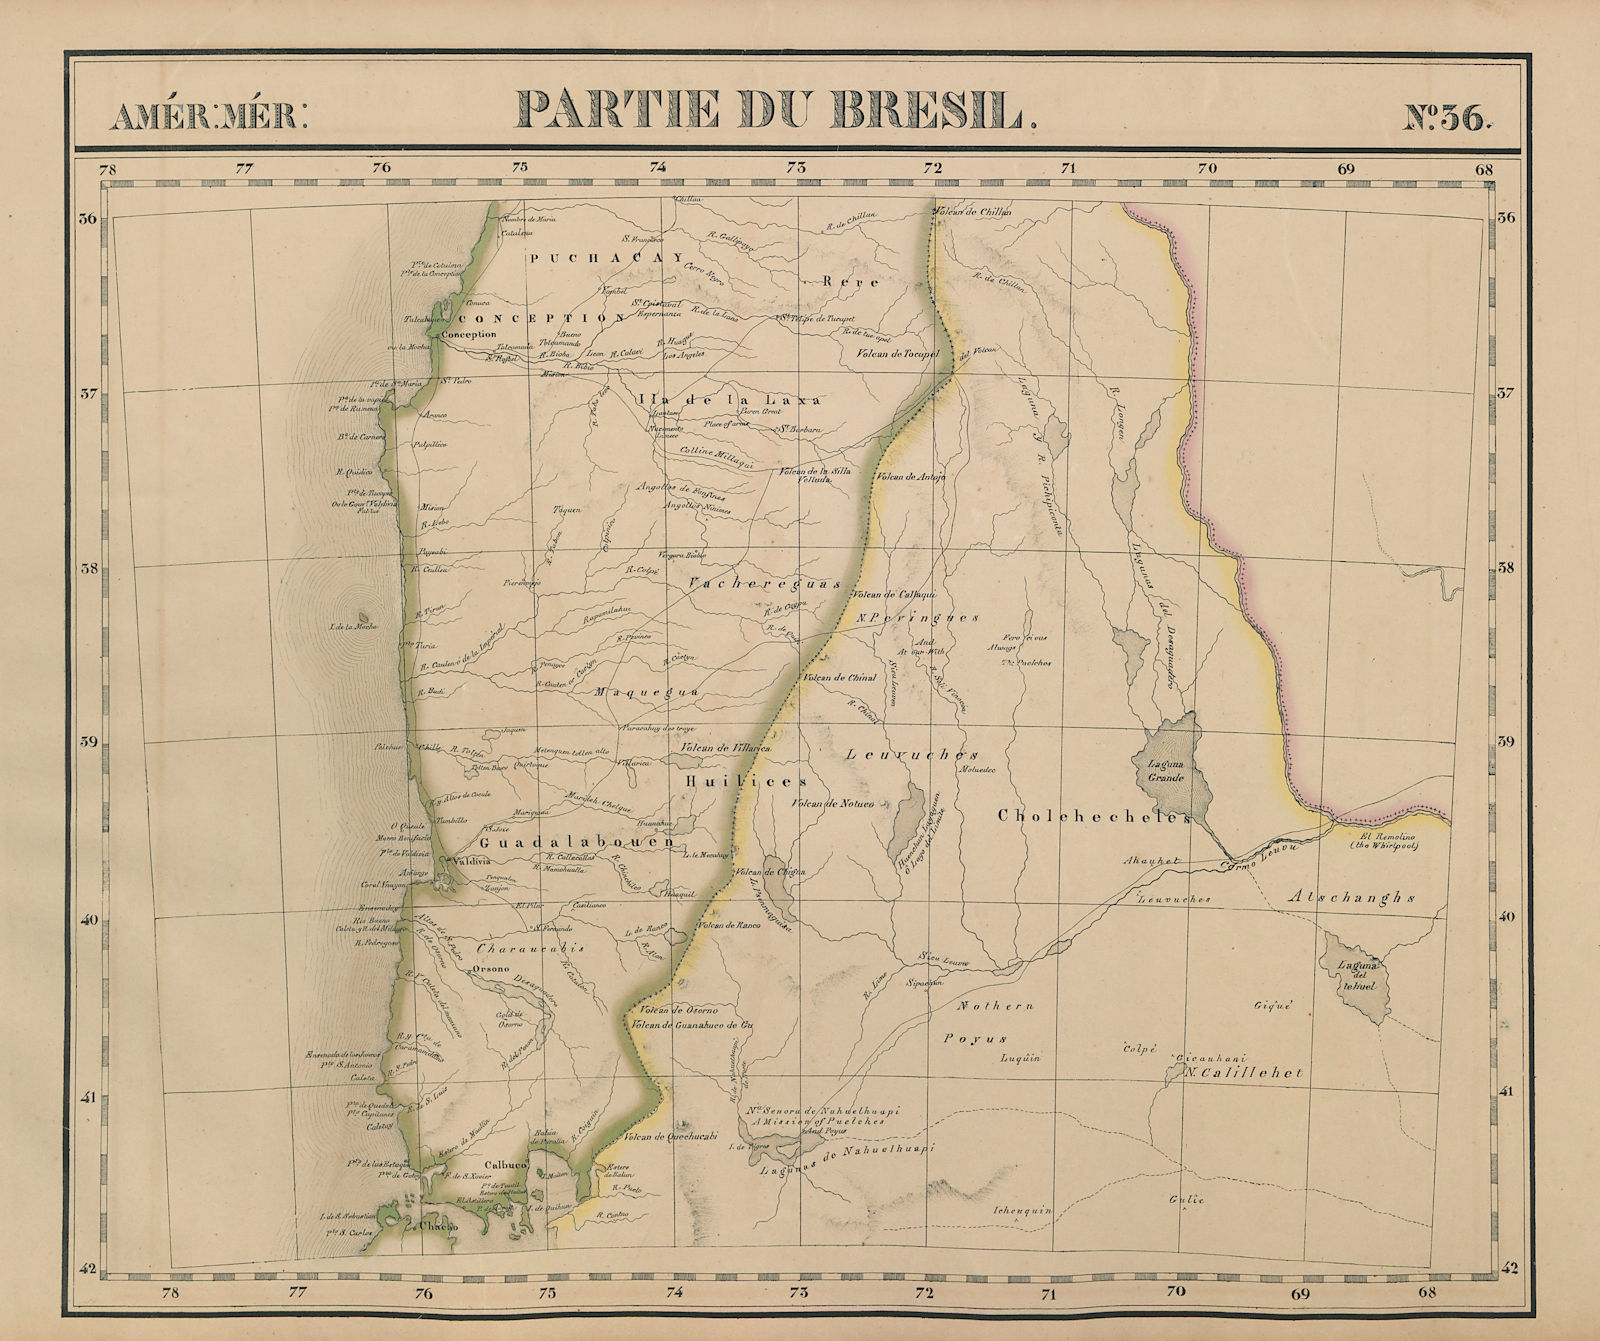 Amér Mér. Brésil #36 Central Chile. West-central Argentina VANDERMAELEN 1827 map